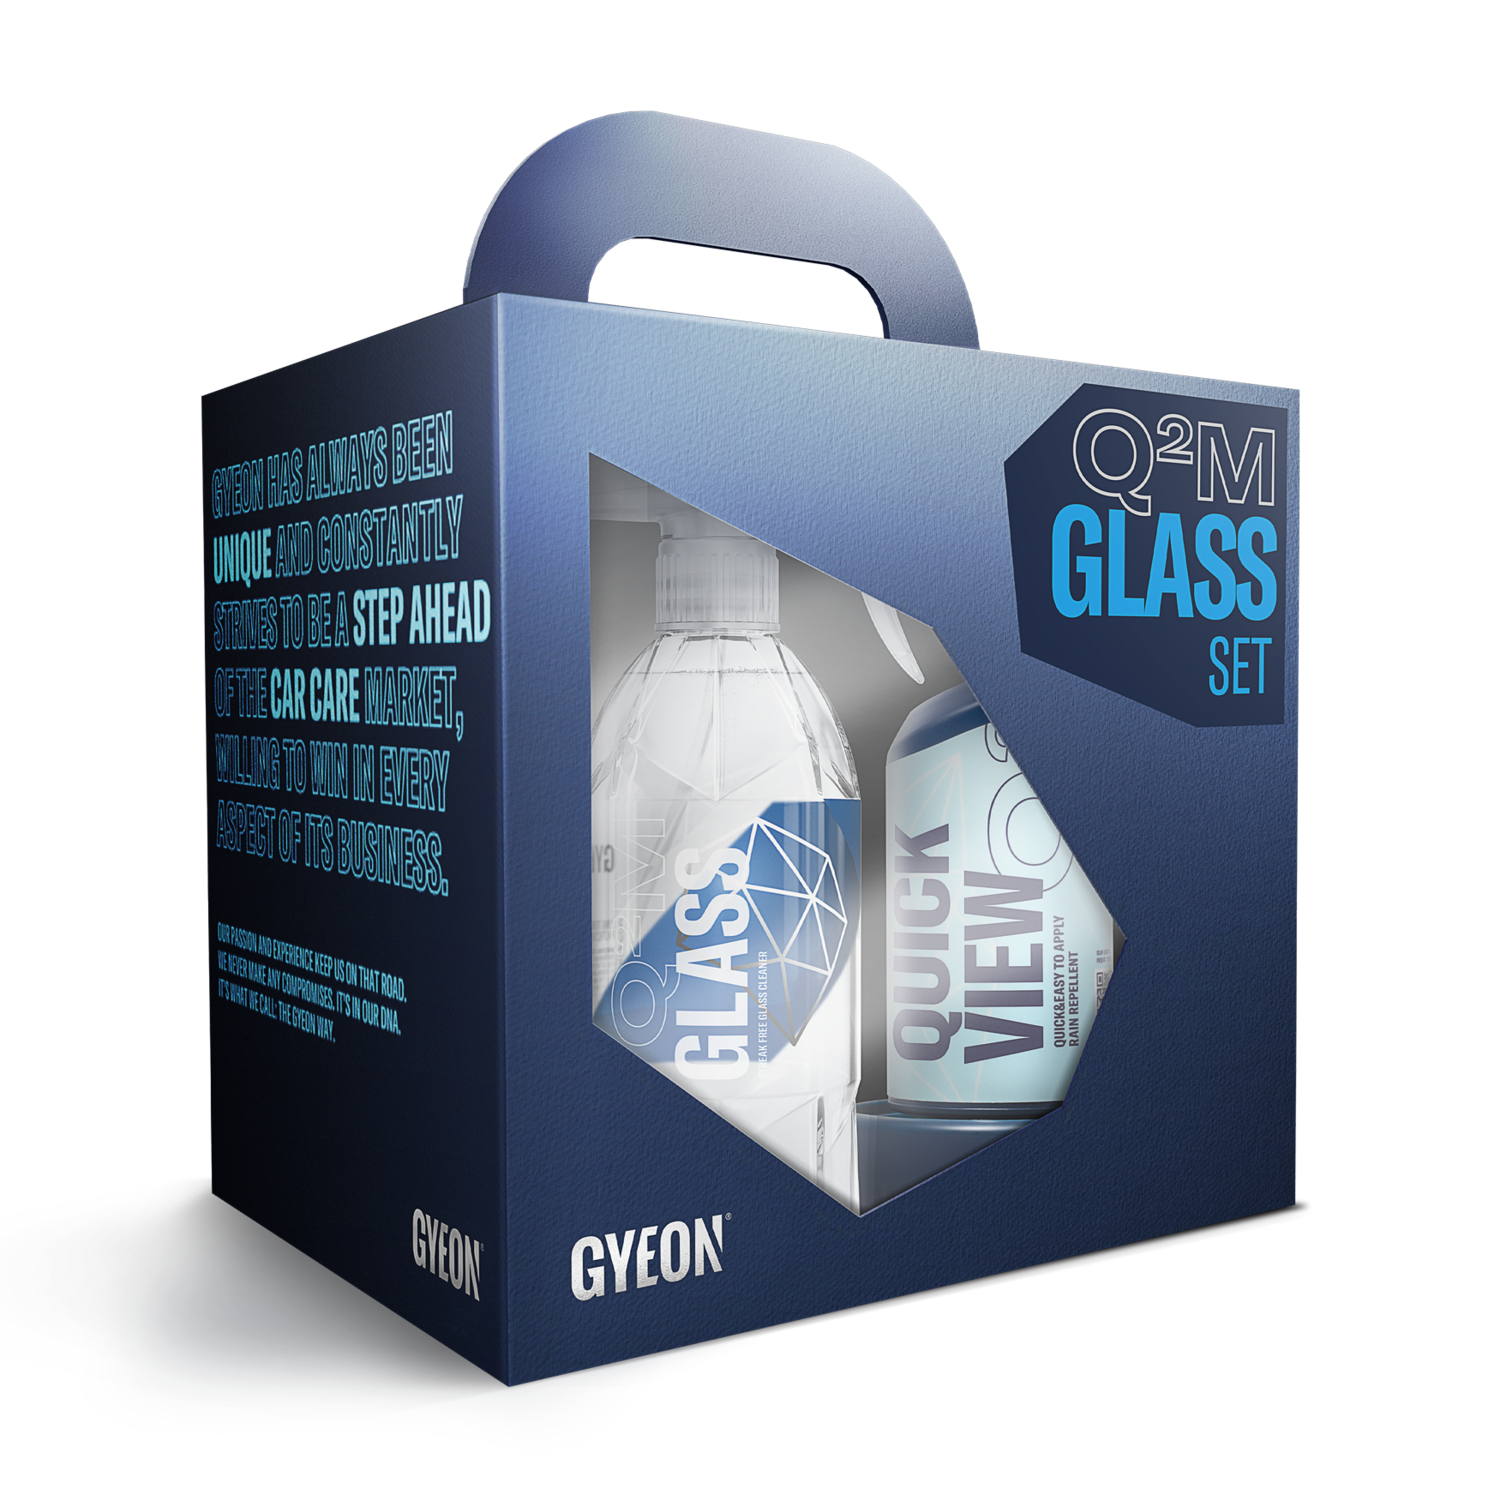 Q²M Glass Set - Bundle Box